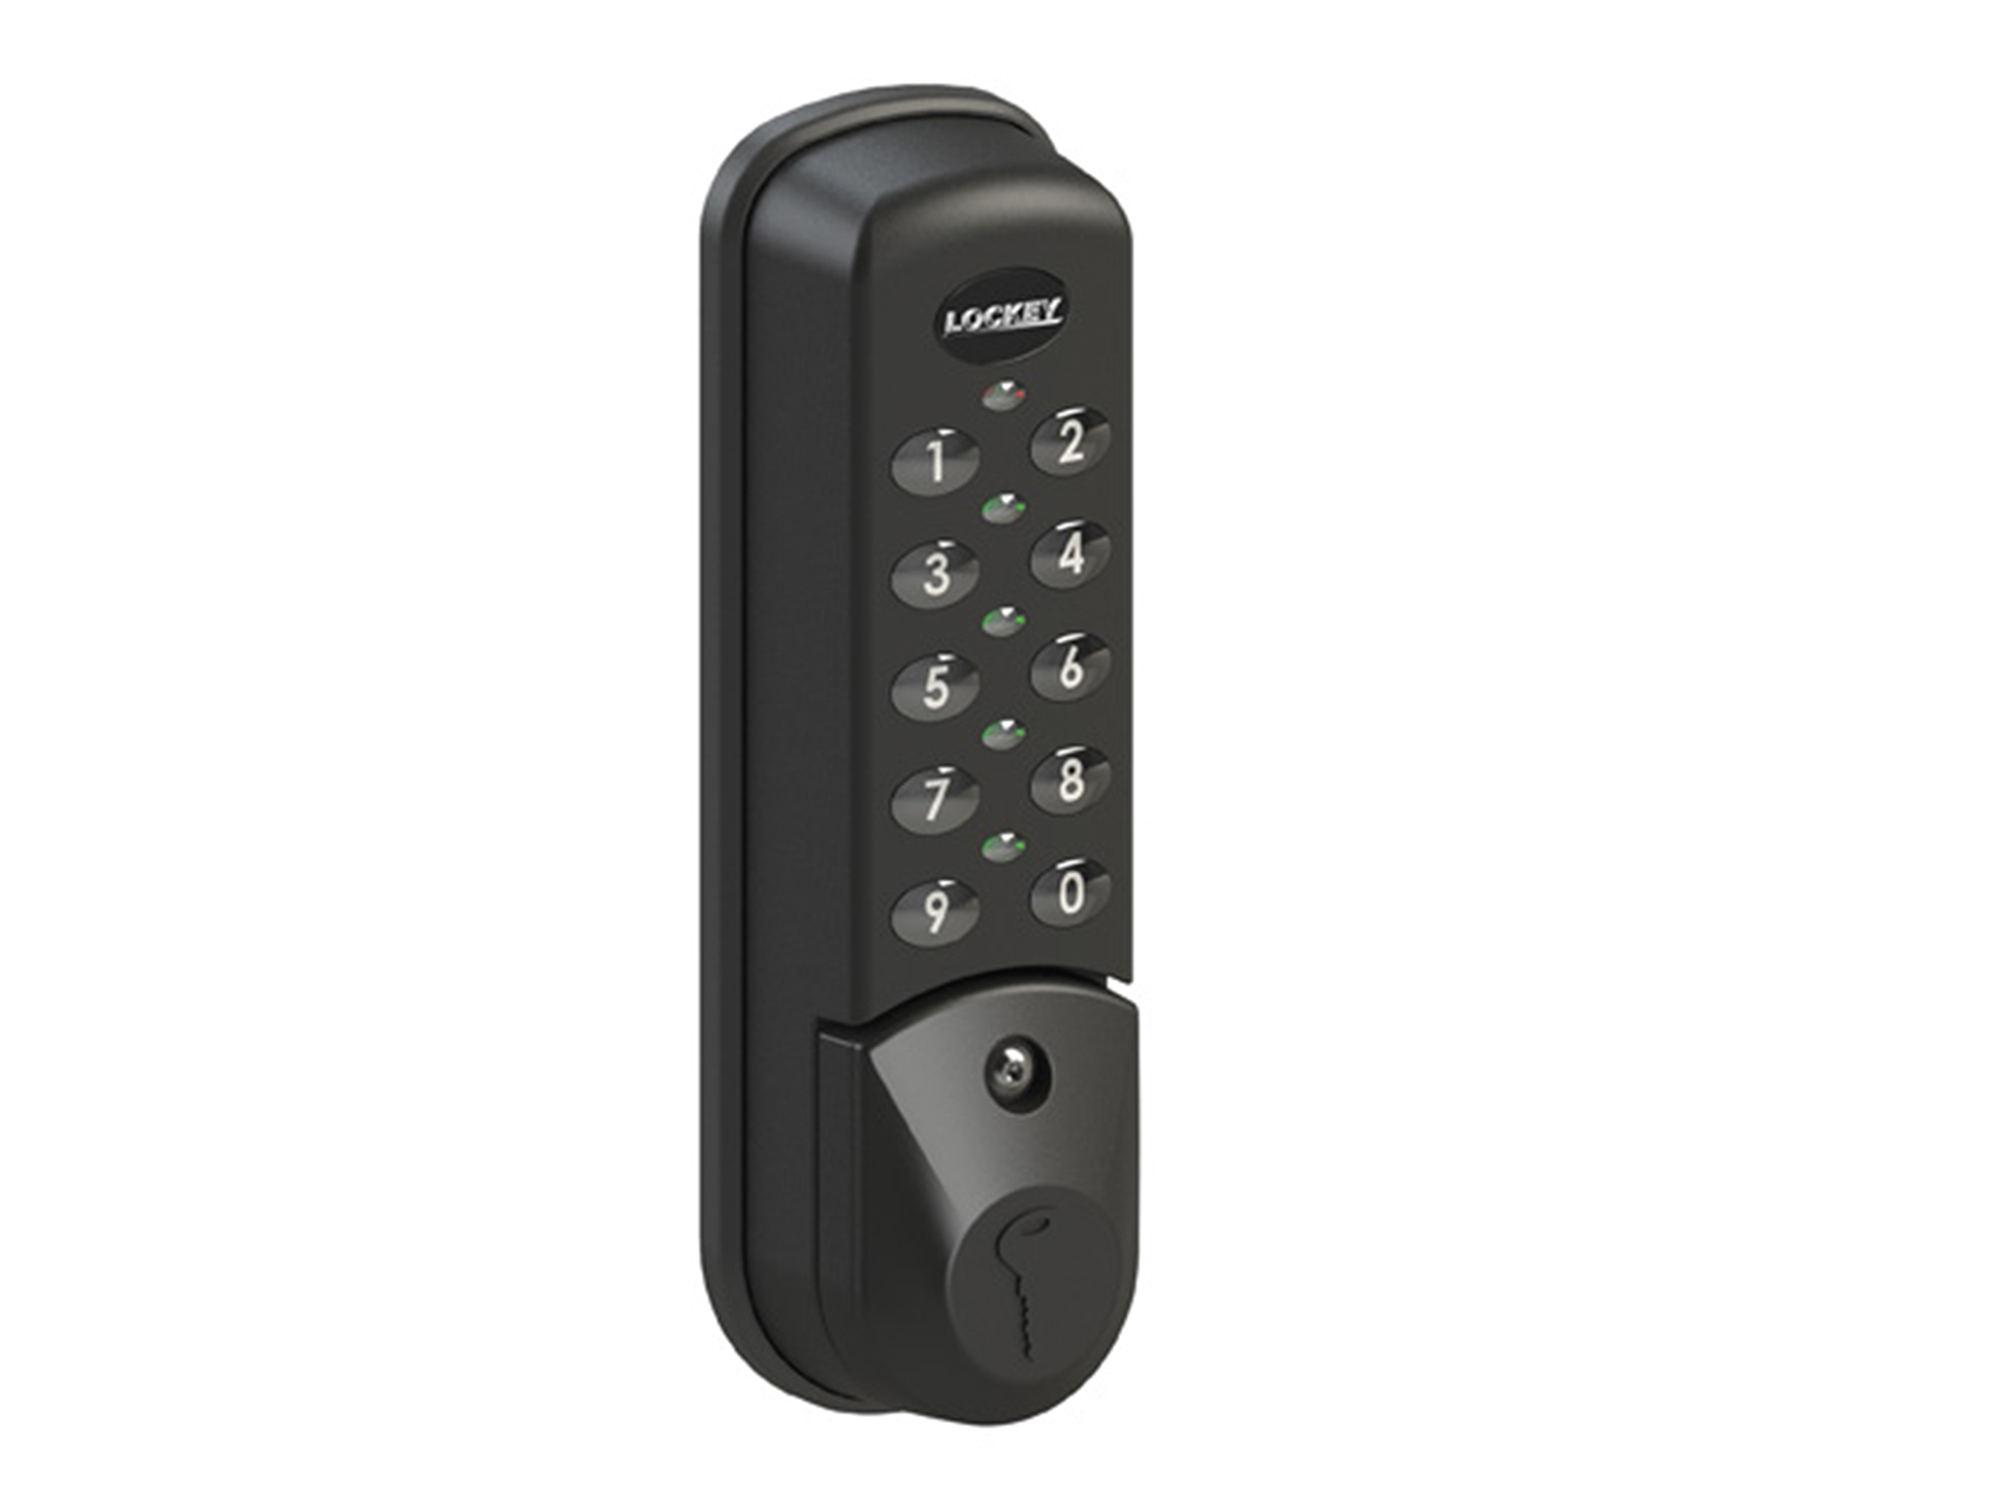 Lockey EC781 Wet Area Electronic Cabinet/Locker Cam Lock